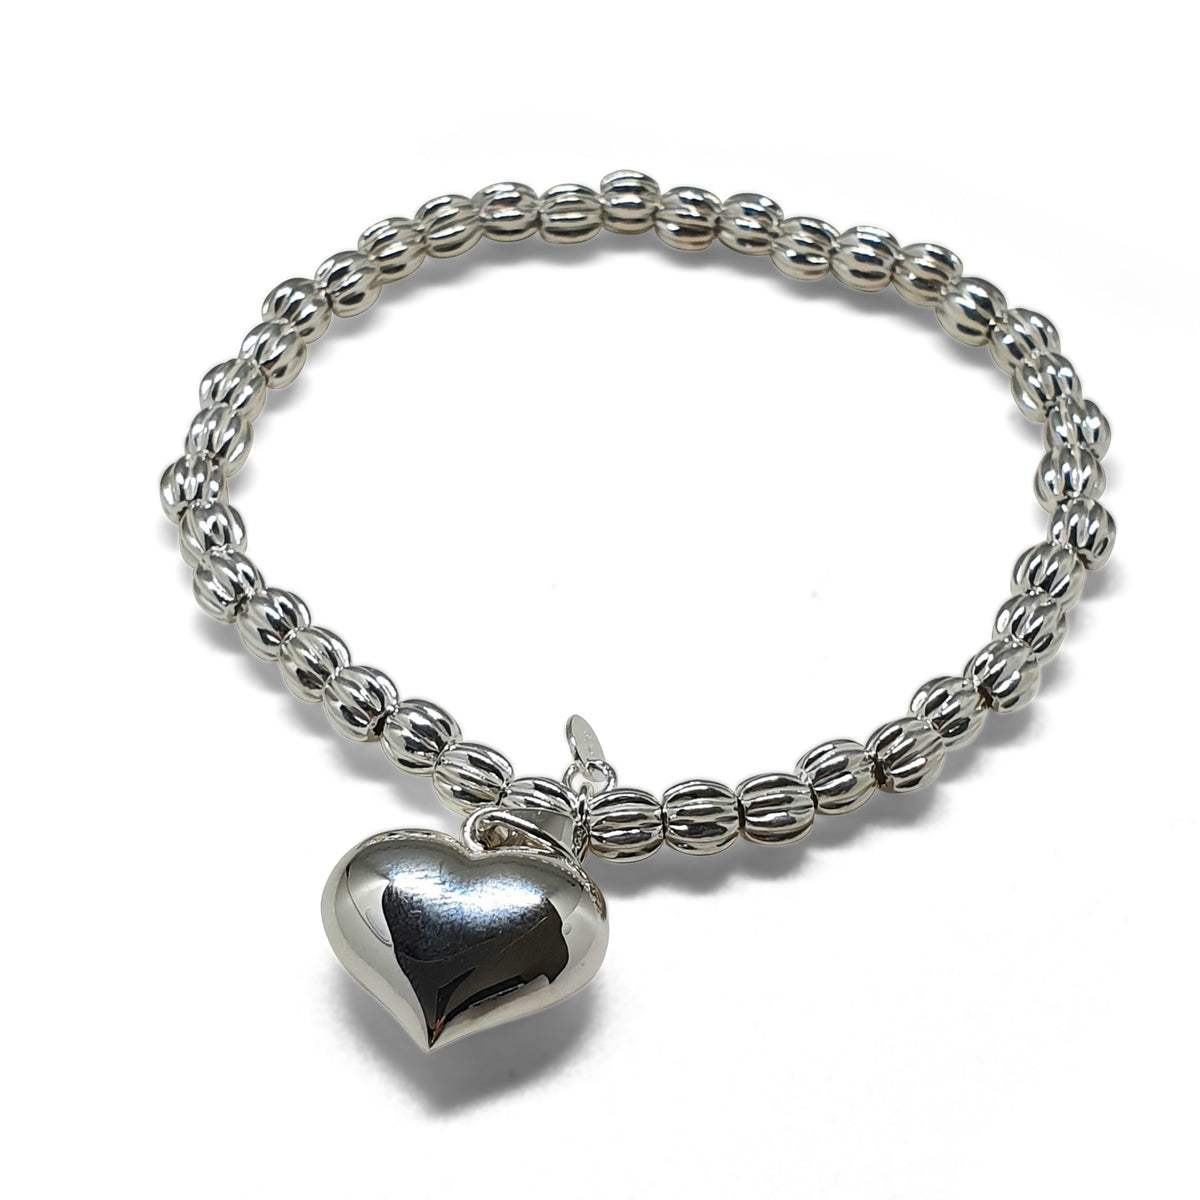 Bracelet silver heart